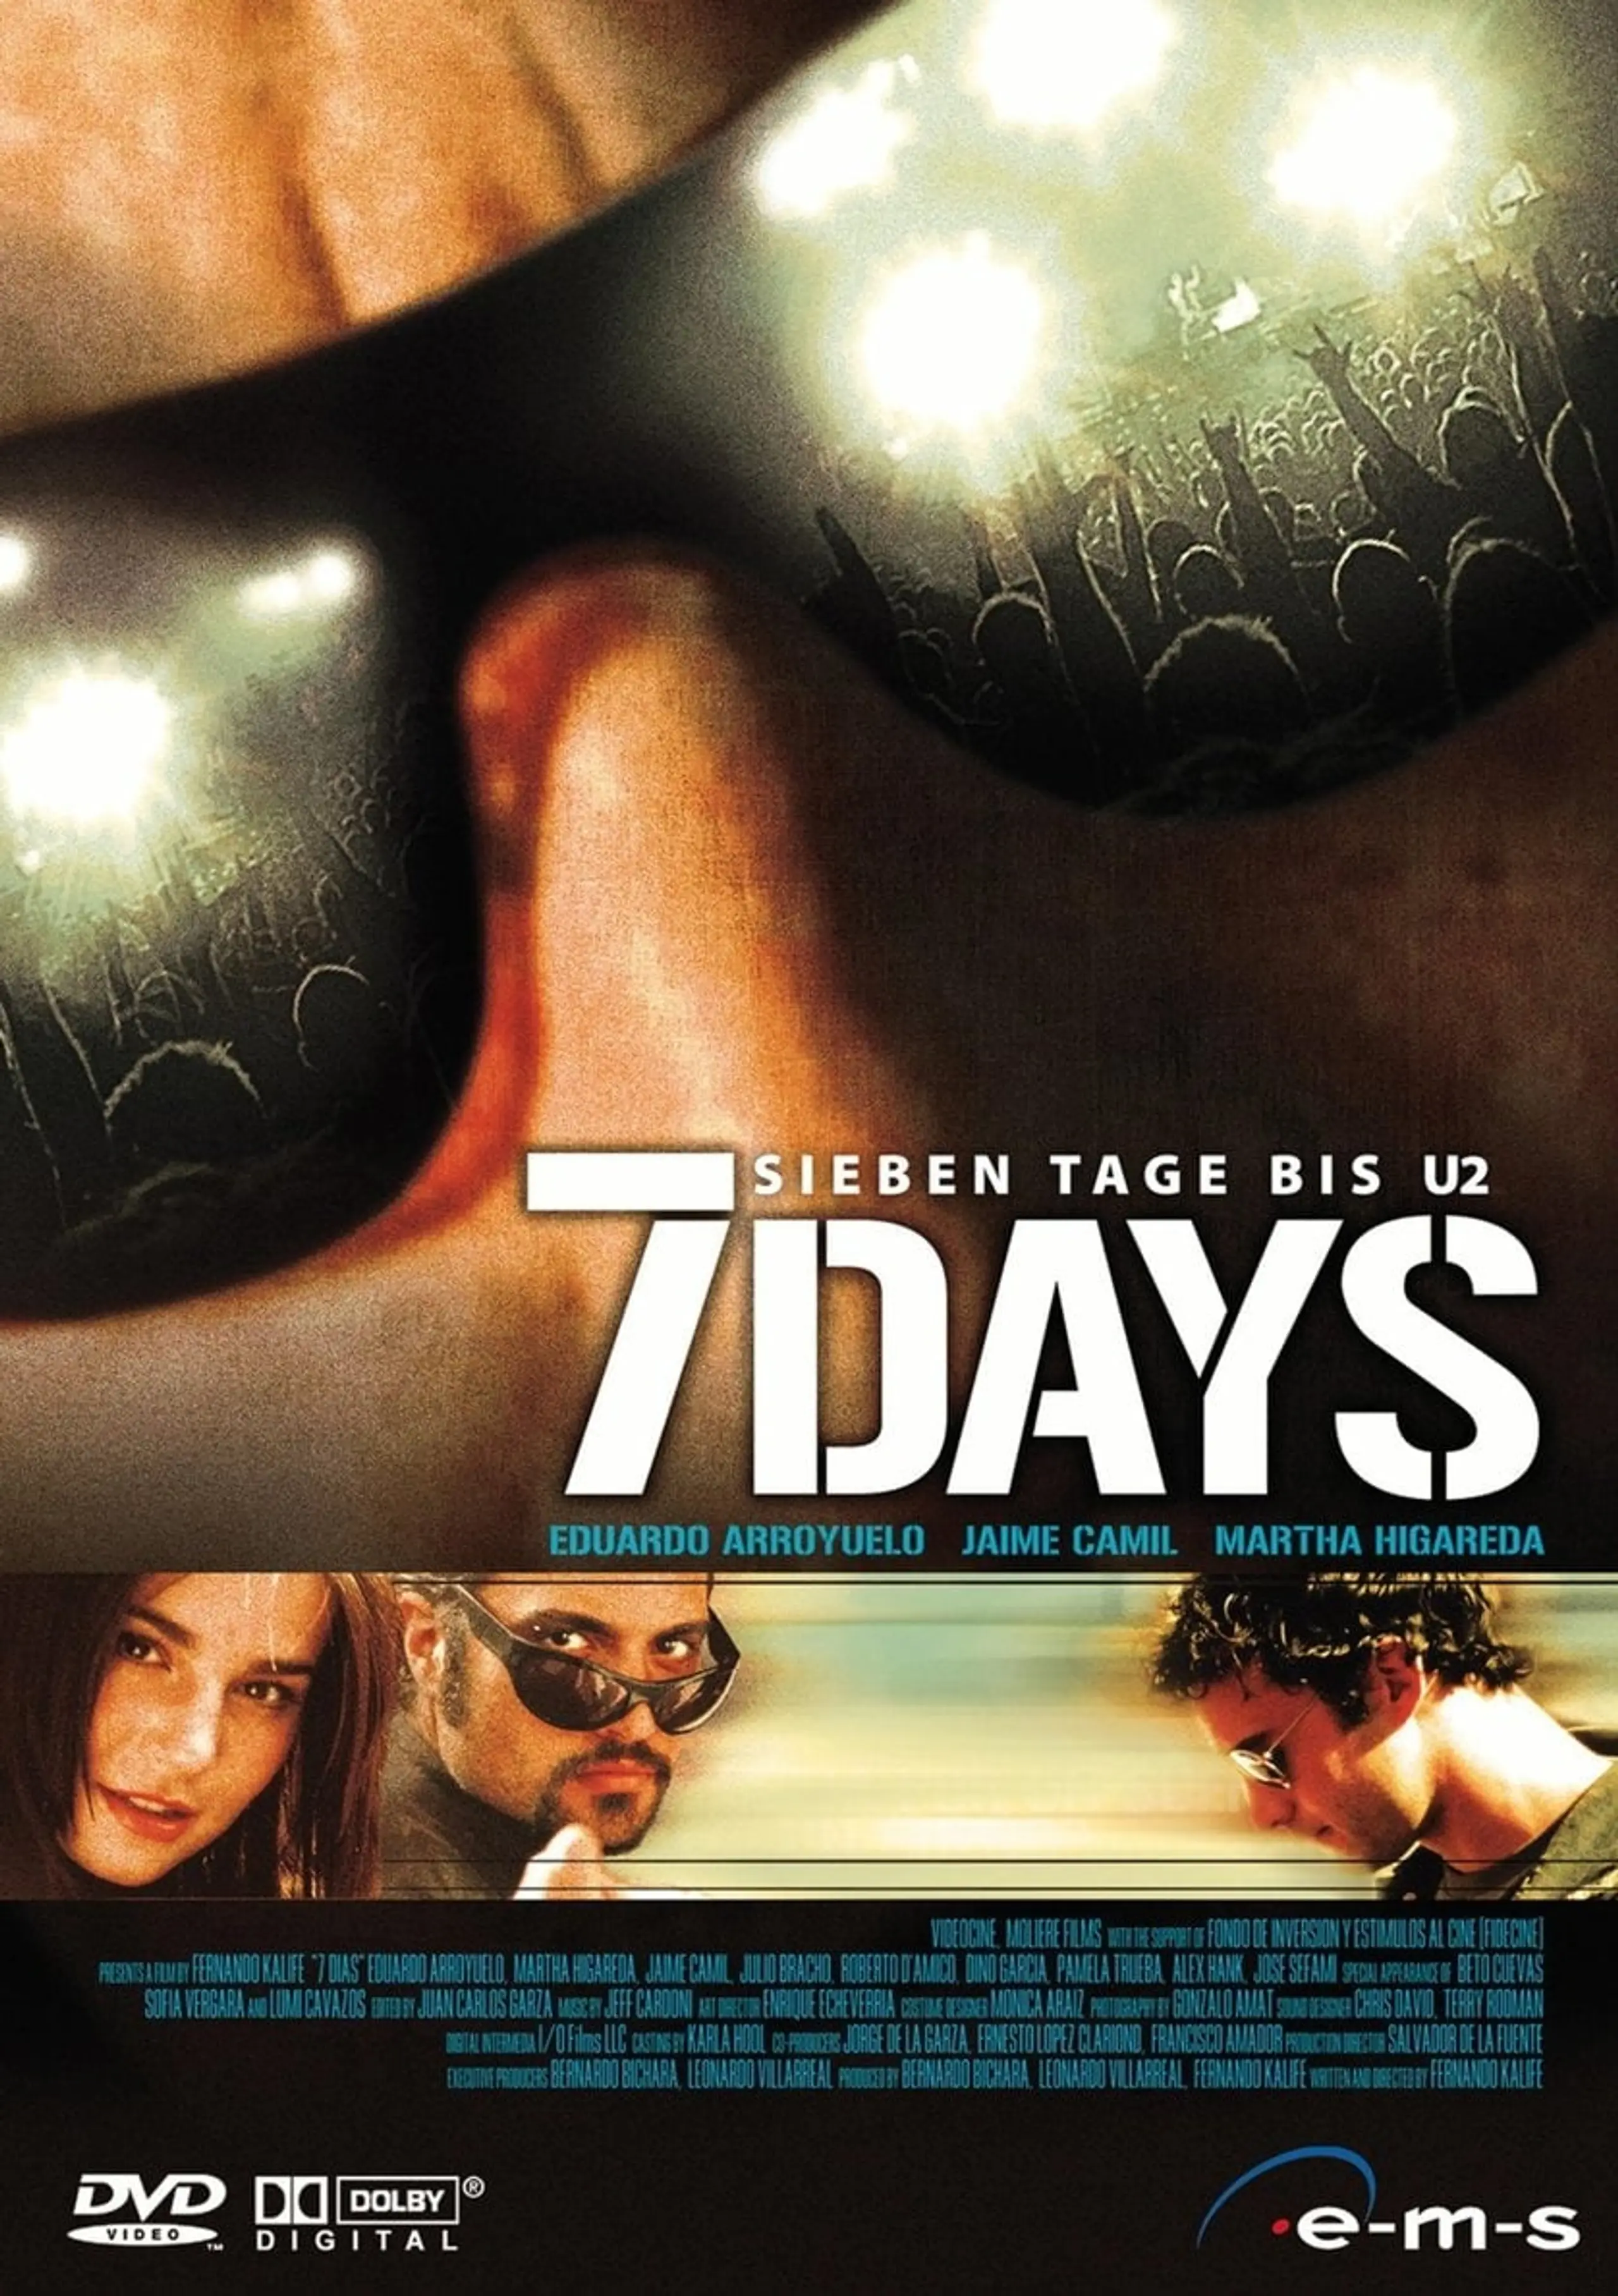 7 Days - Sieben Tage bis U2